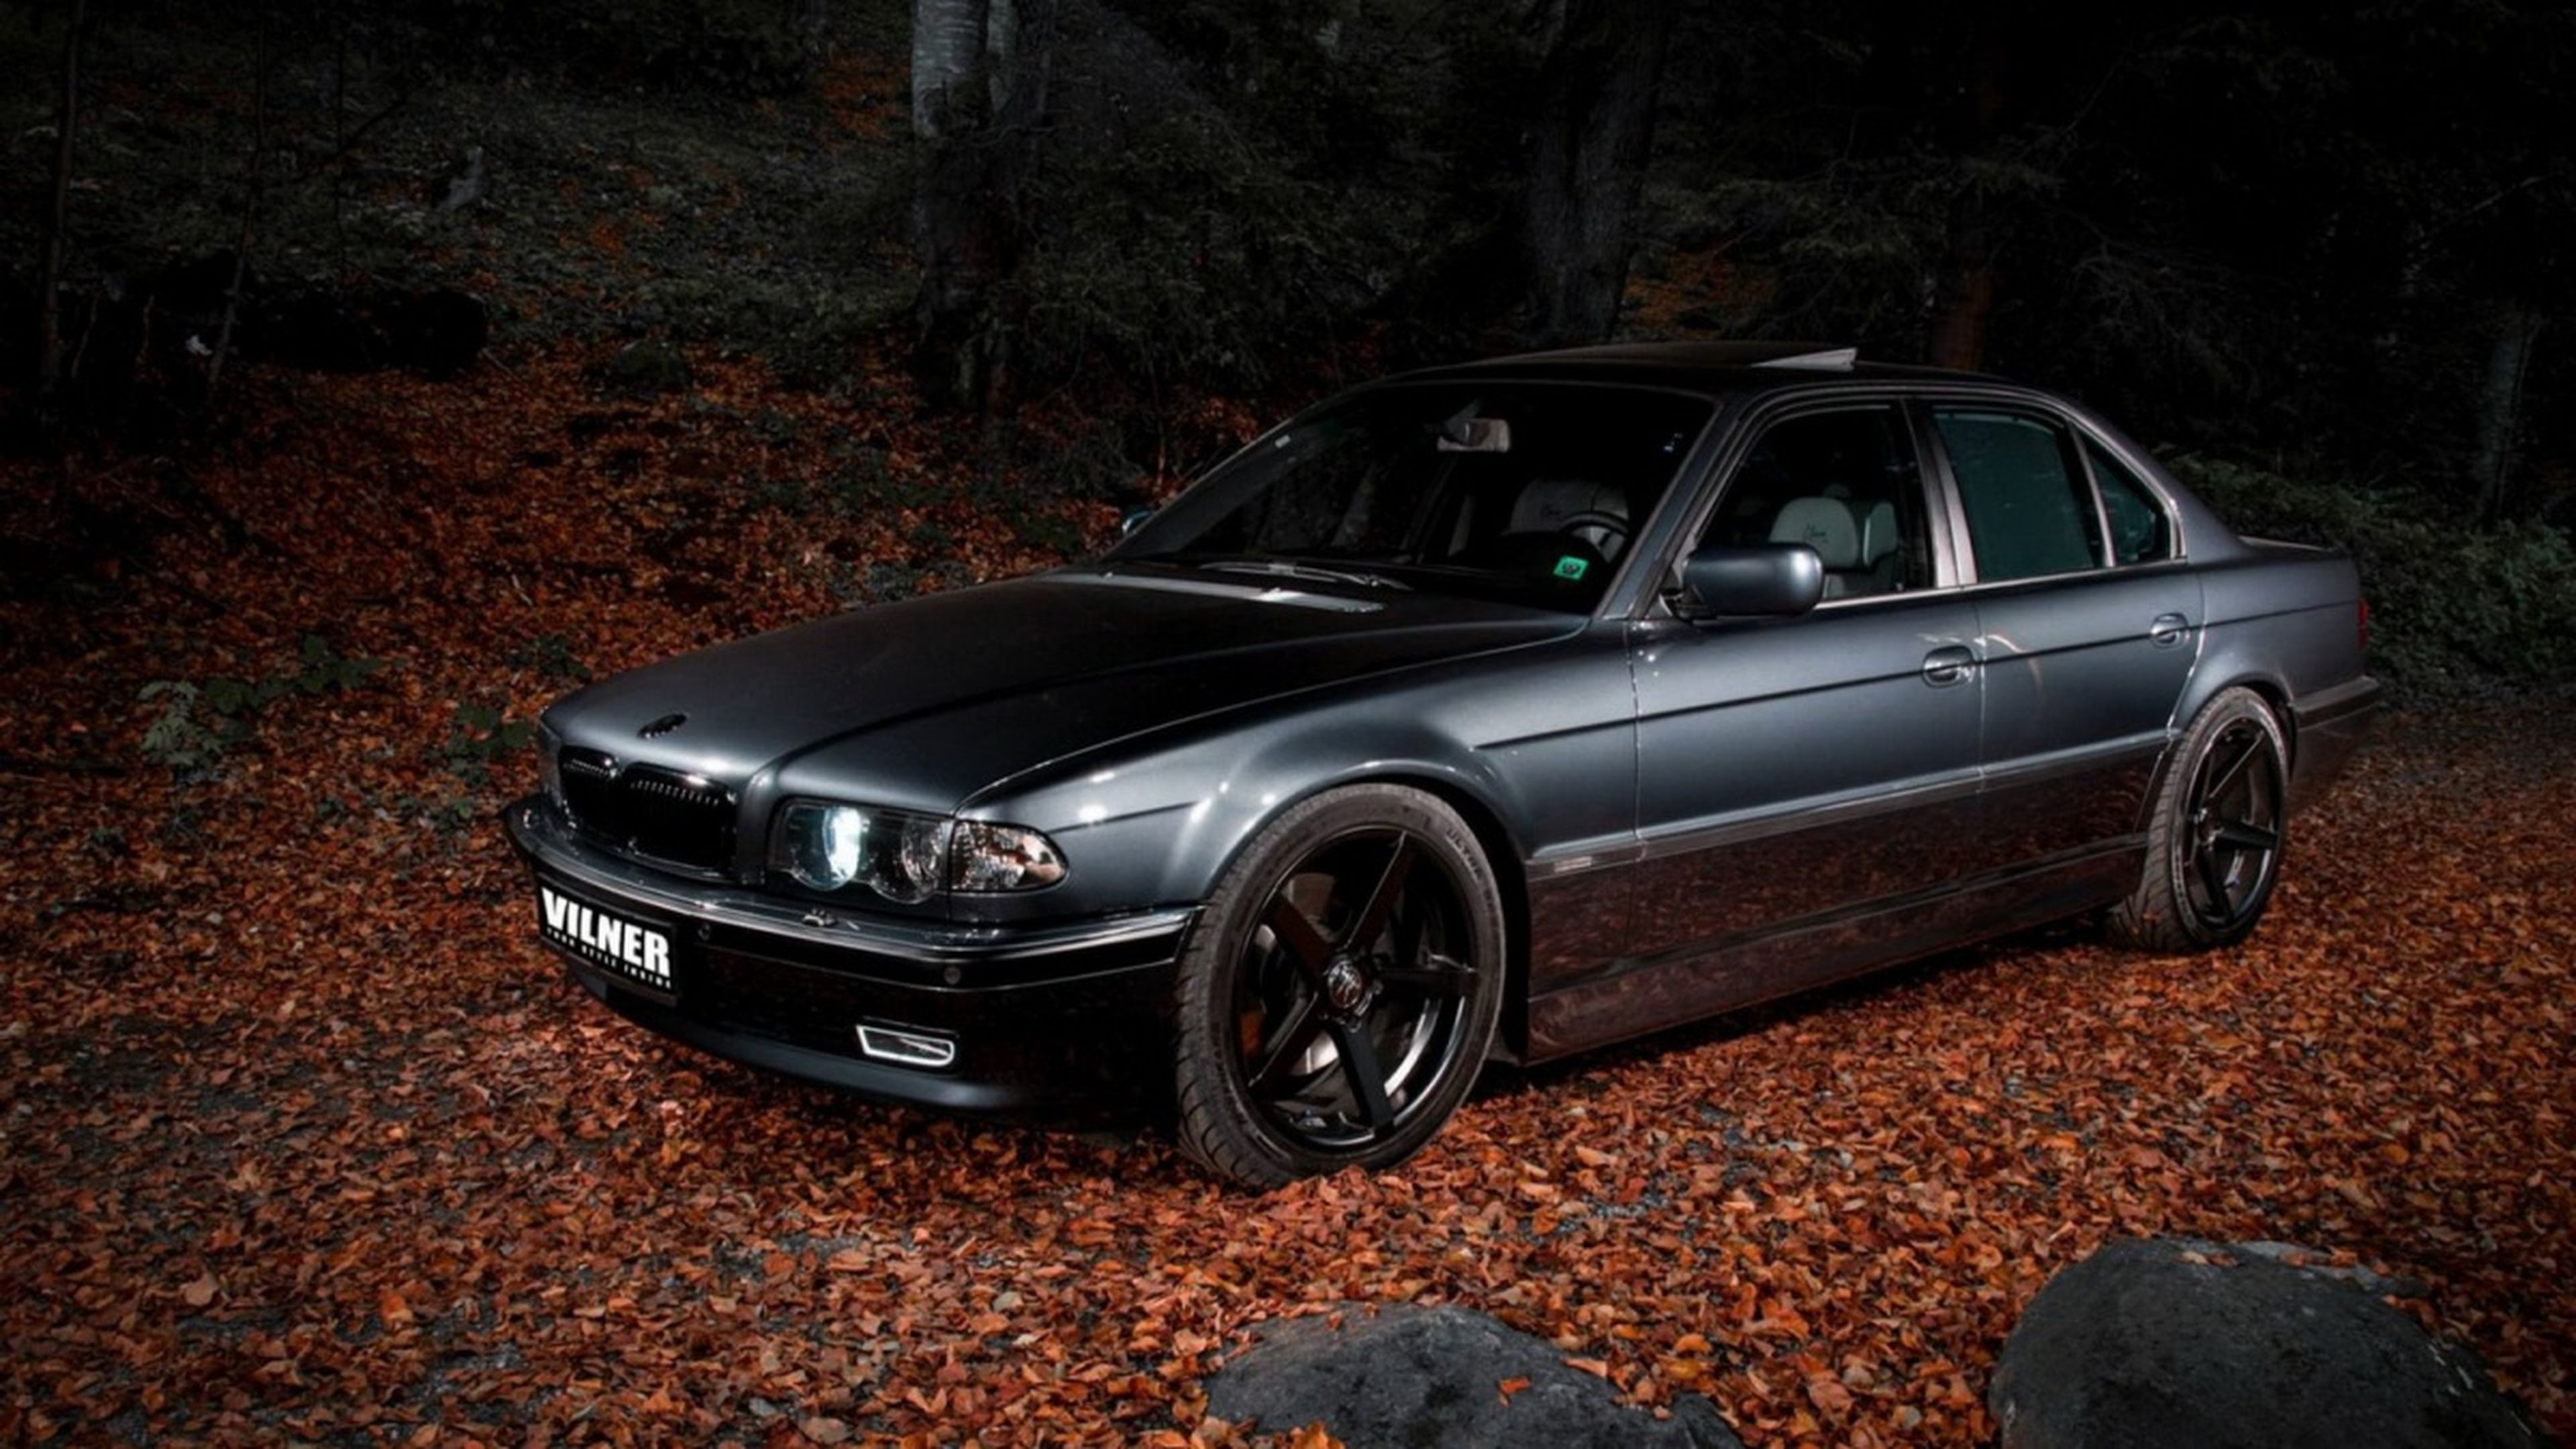 BMW 750i Vilner frontal